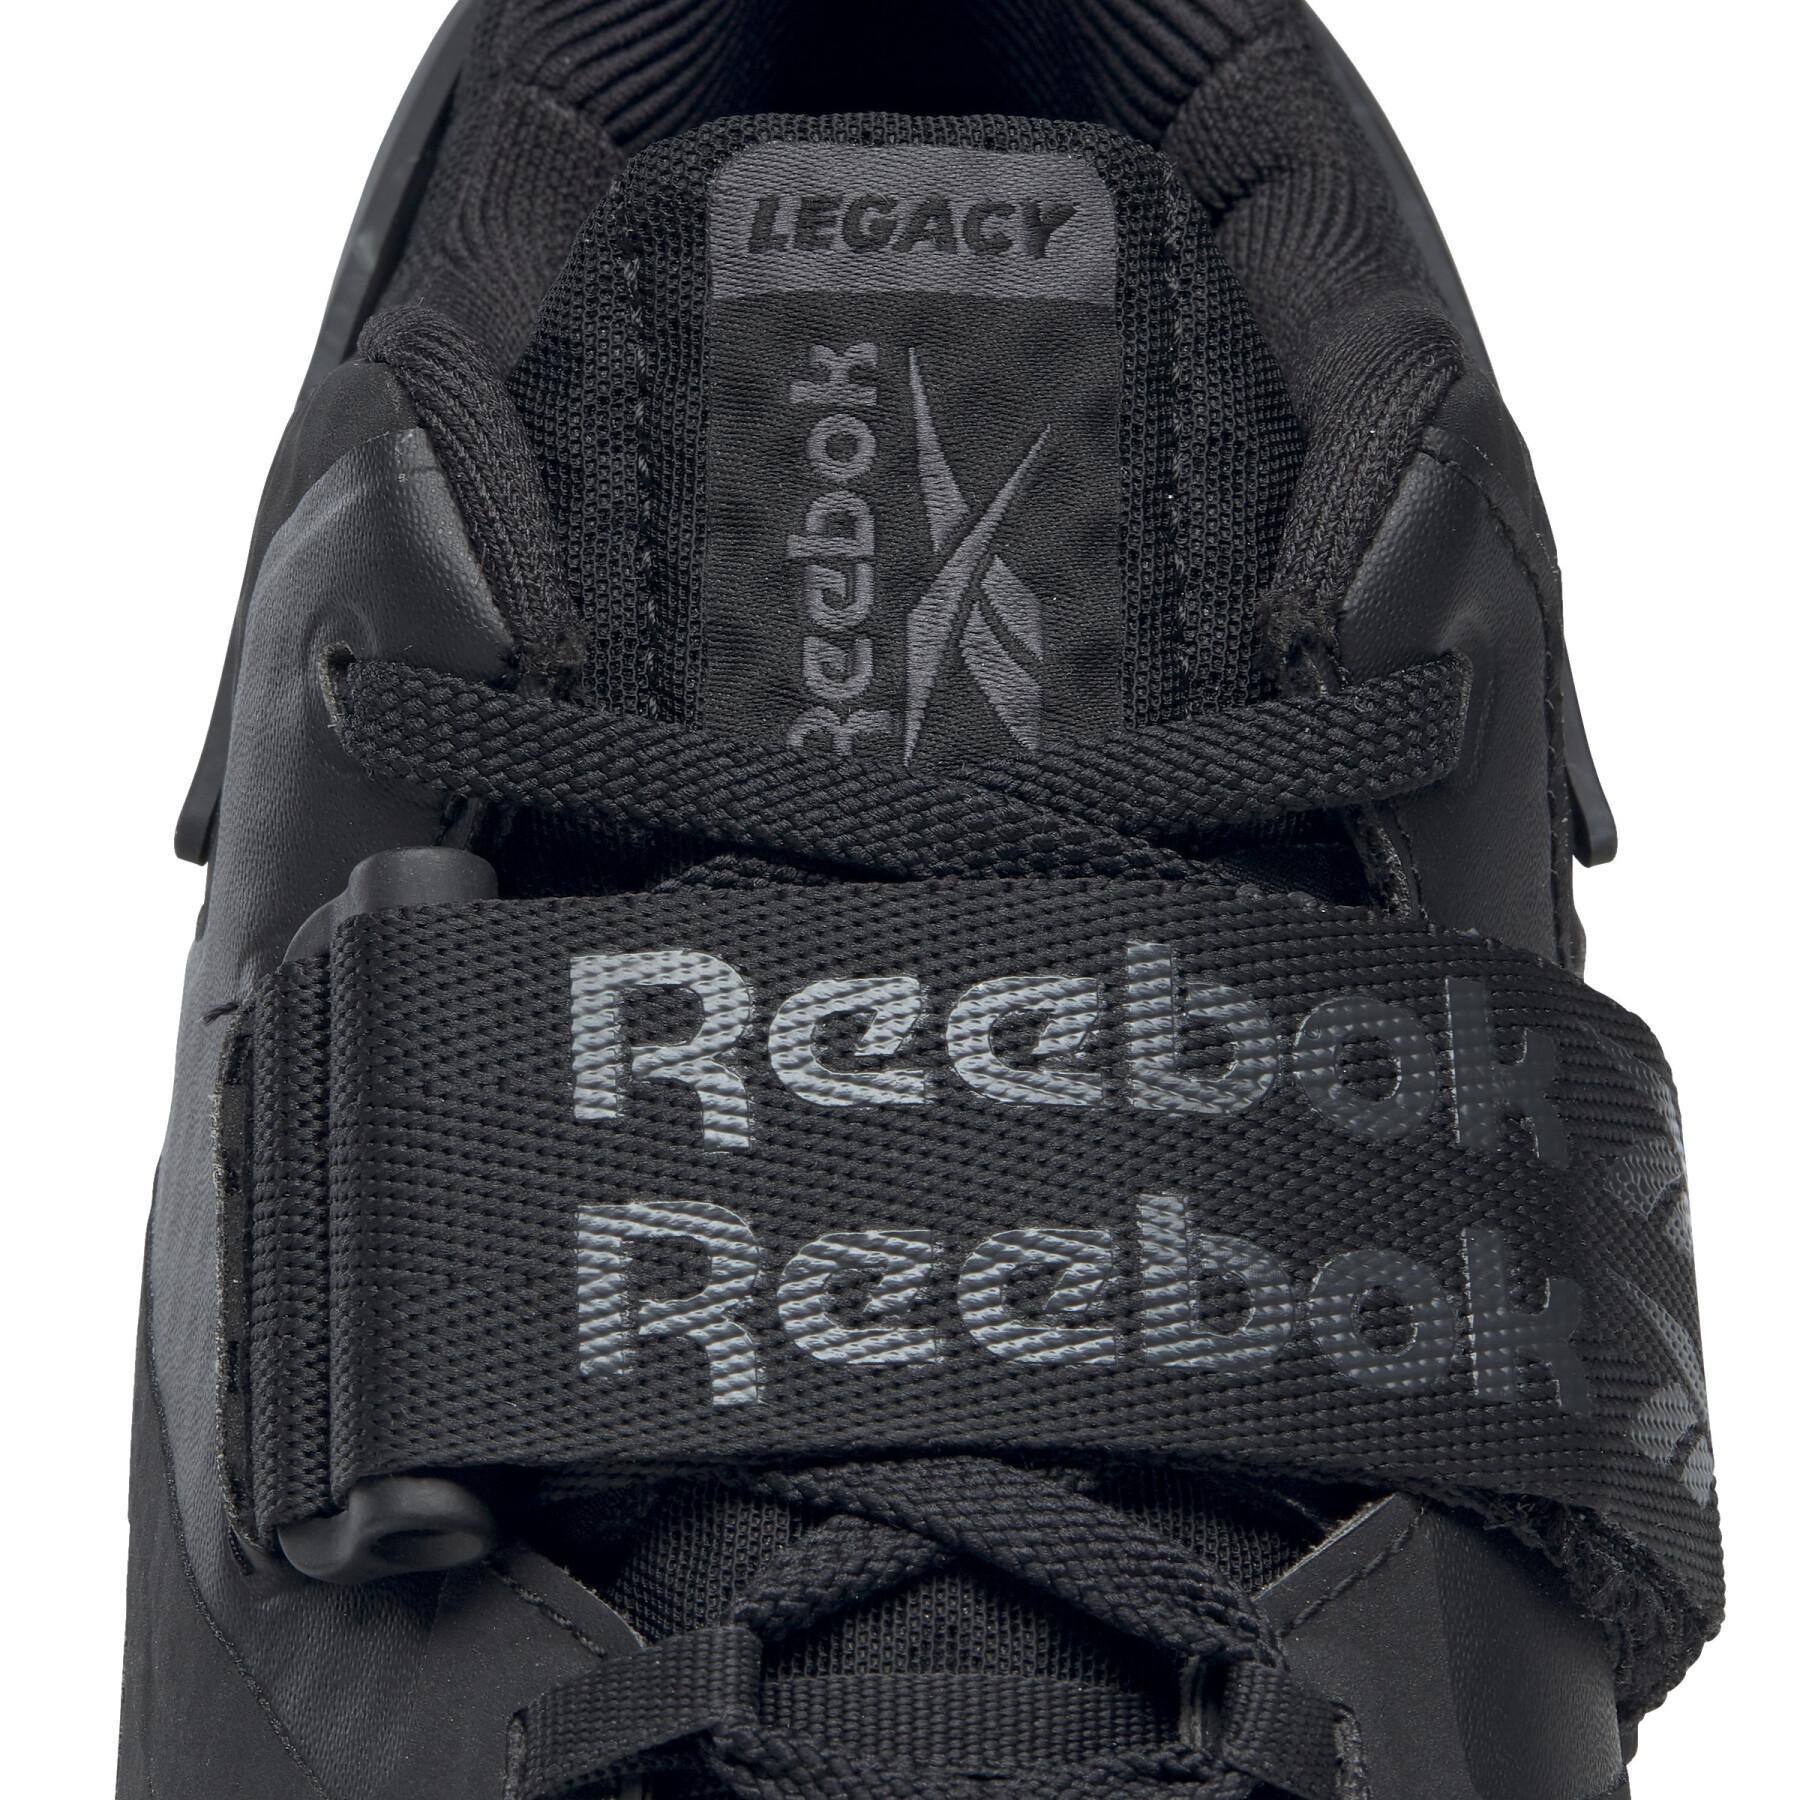 Schuhe Reebok Legacy Lifter Ii